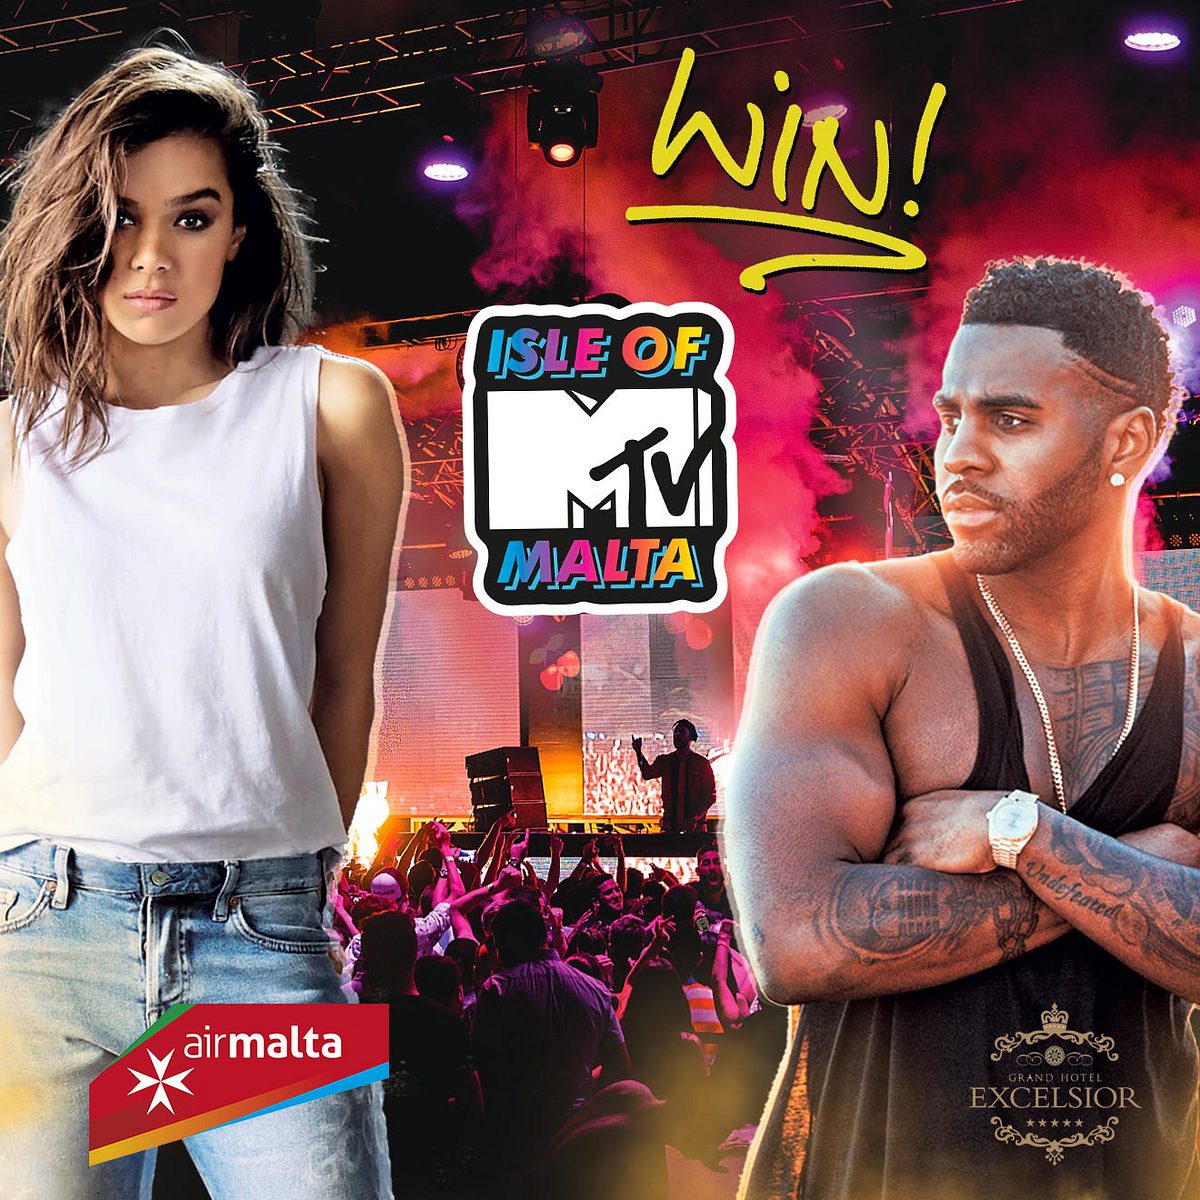 Deine Chance auf einen Trip zur Isle of MTV Malta 2018 – viel Glück!